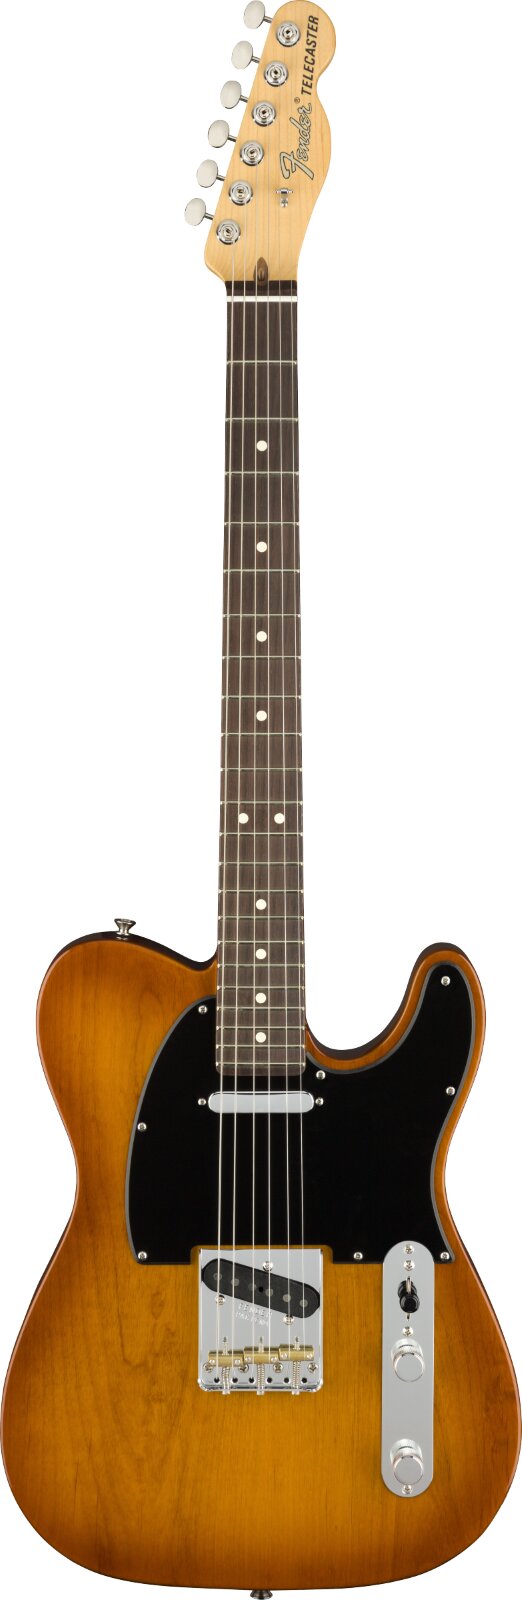 Fender American Performer Series Telecaster Rosewood Griffbrett Honey Burst : photo 1